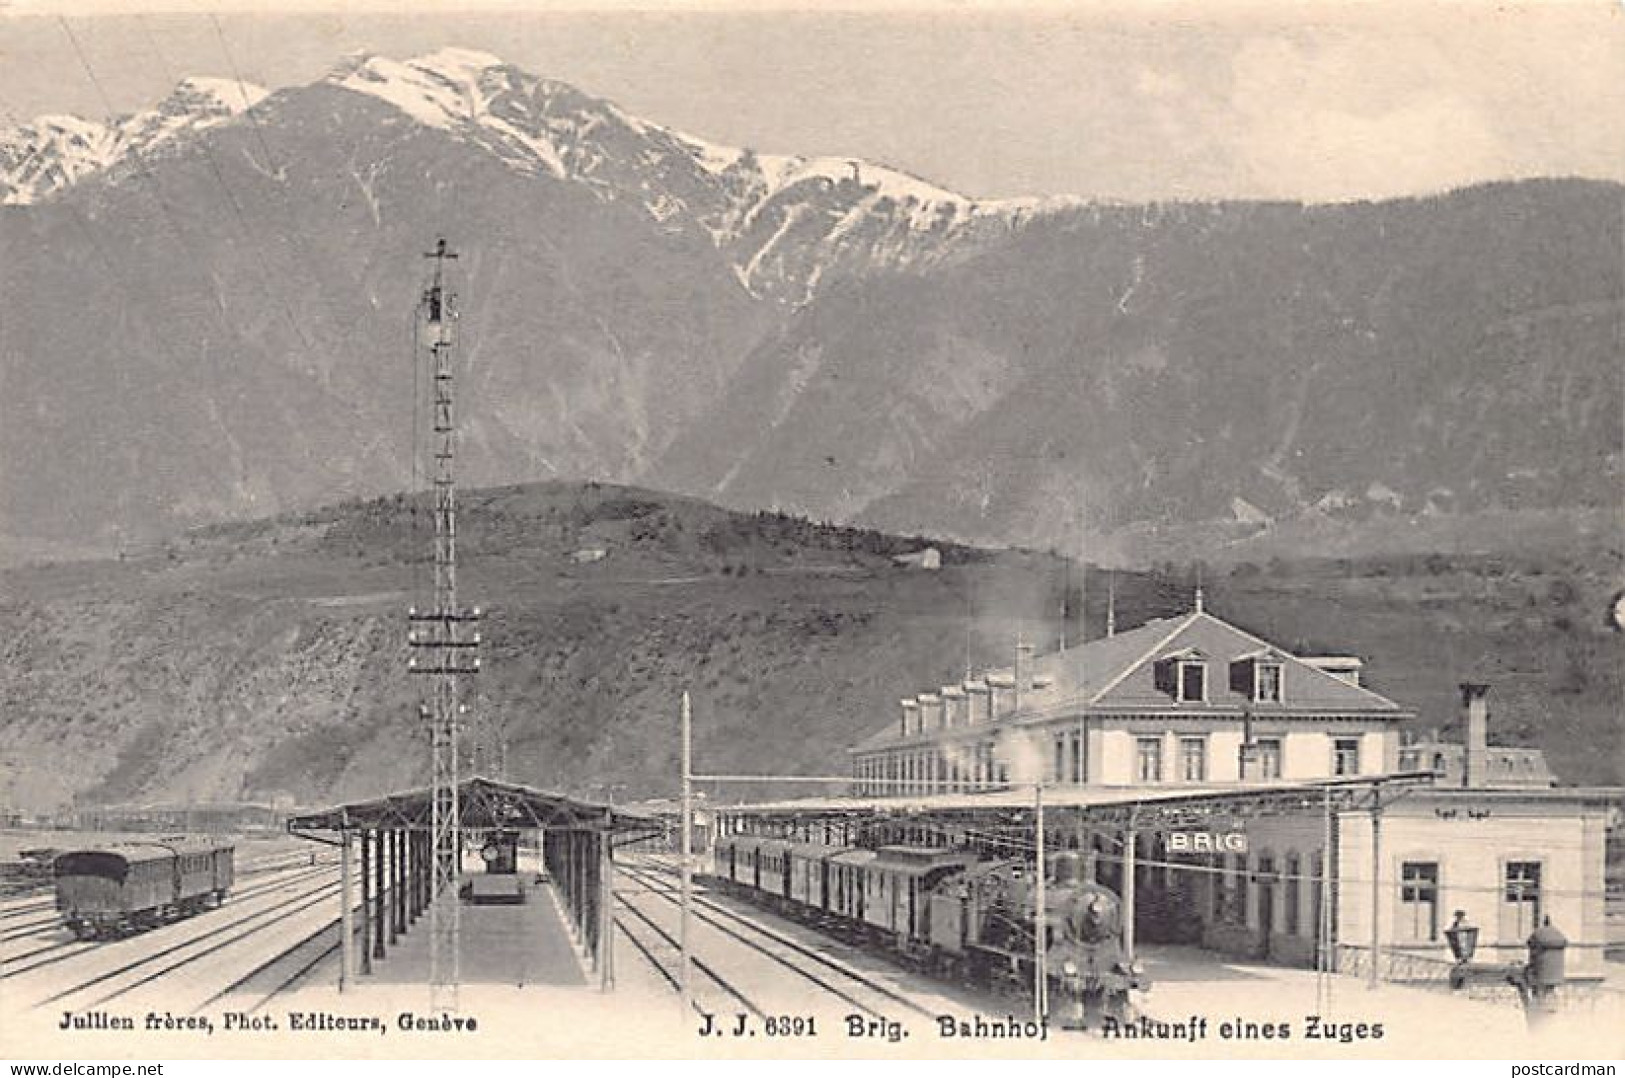 Suisse - Schweiz - BRIG (VS) Bahnhof - Nkunft Eines Zuges - Verlag Jullien J.J. 6391 - Brigue-Glis 